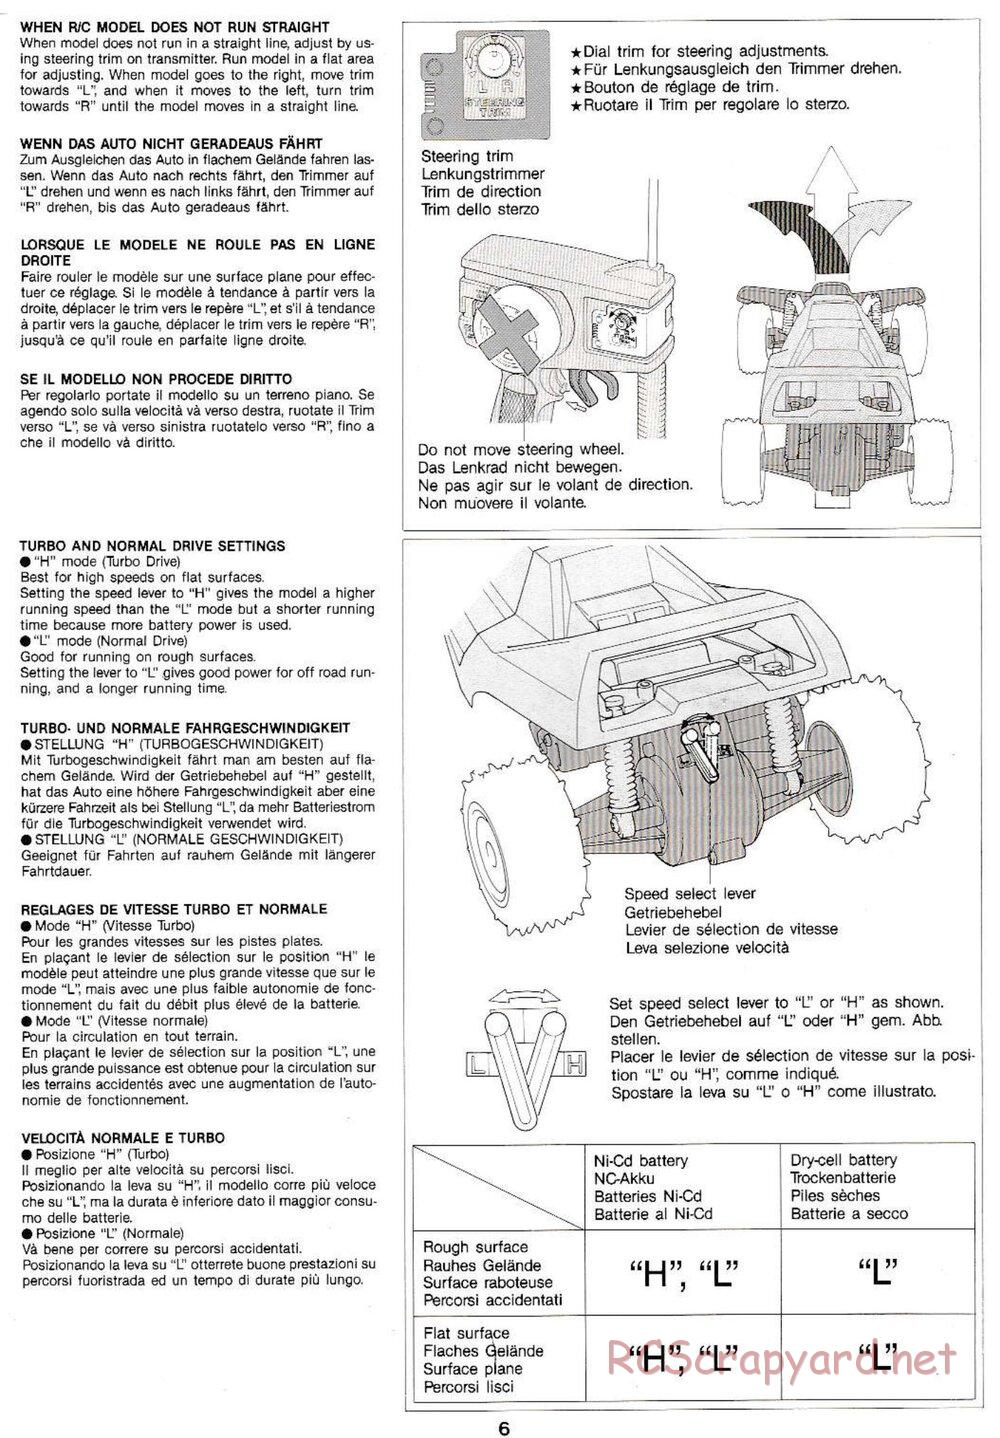 Tamiya - Super Sabre QD Chassis - Manual - Page 6